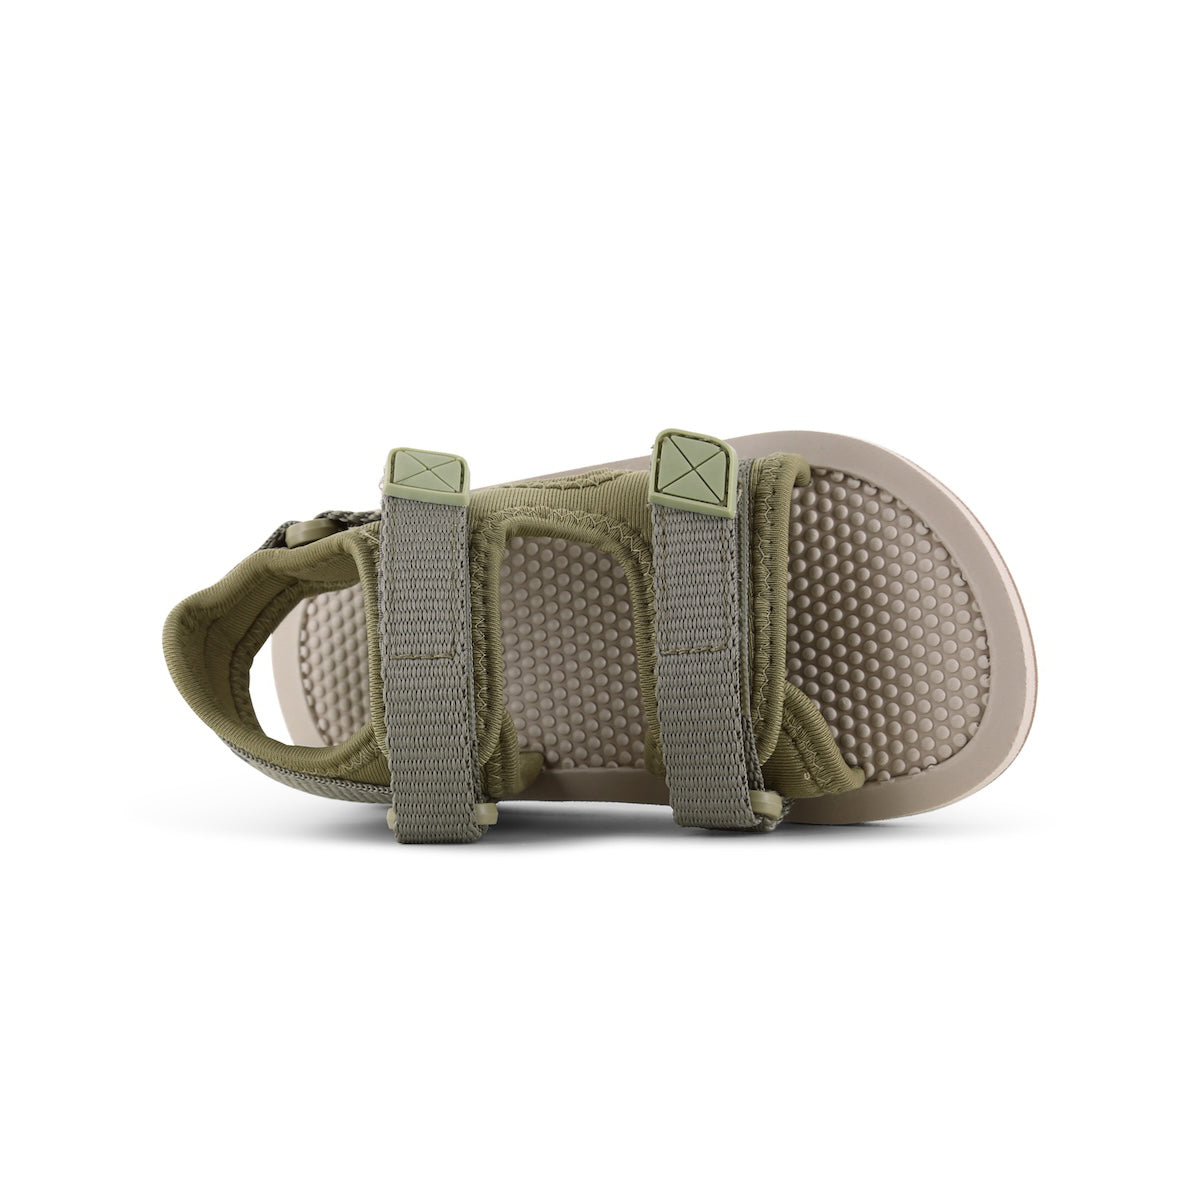 De Shoesme lichtgewicht sandaal olive green is extreem licht van gewicht. Deze zomerschoen is ideaal voor kinderen die al goed kunnen lopen. Met deze sandaaltjes kunnen ze de hele dag buiten spelen. VanZus.